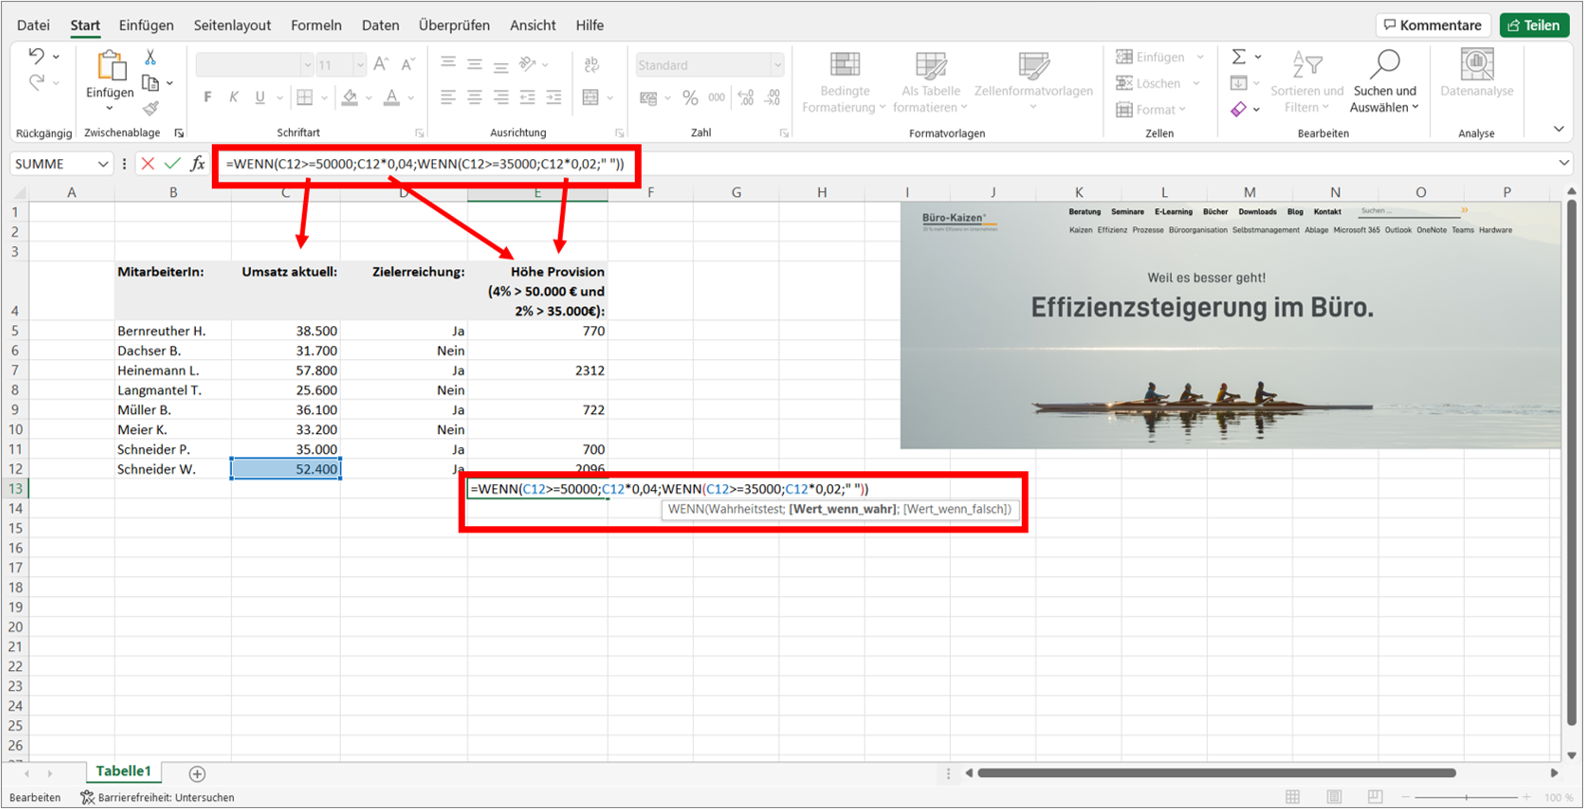 Um mehrere Bedingungen auf einmal abzufragen, können auch mehrere Wenn-Dann-Funktionen ineinander verschachtelt werden. Bild: Microsoft Excel, Büro-Kaizen.